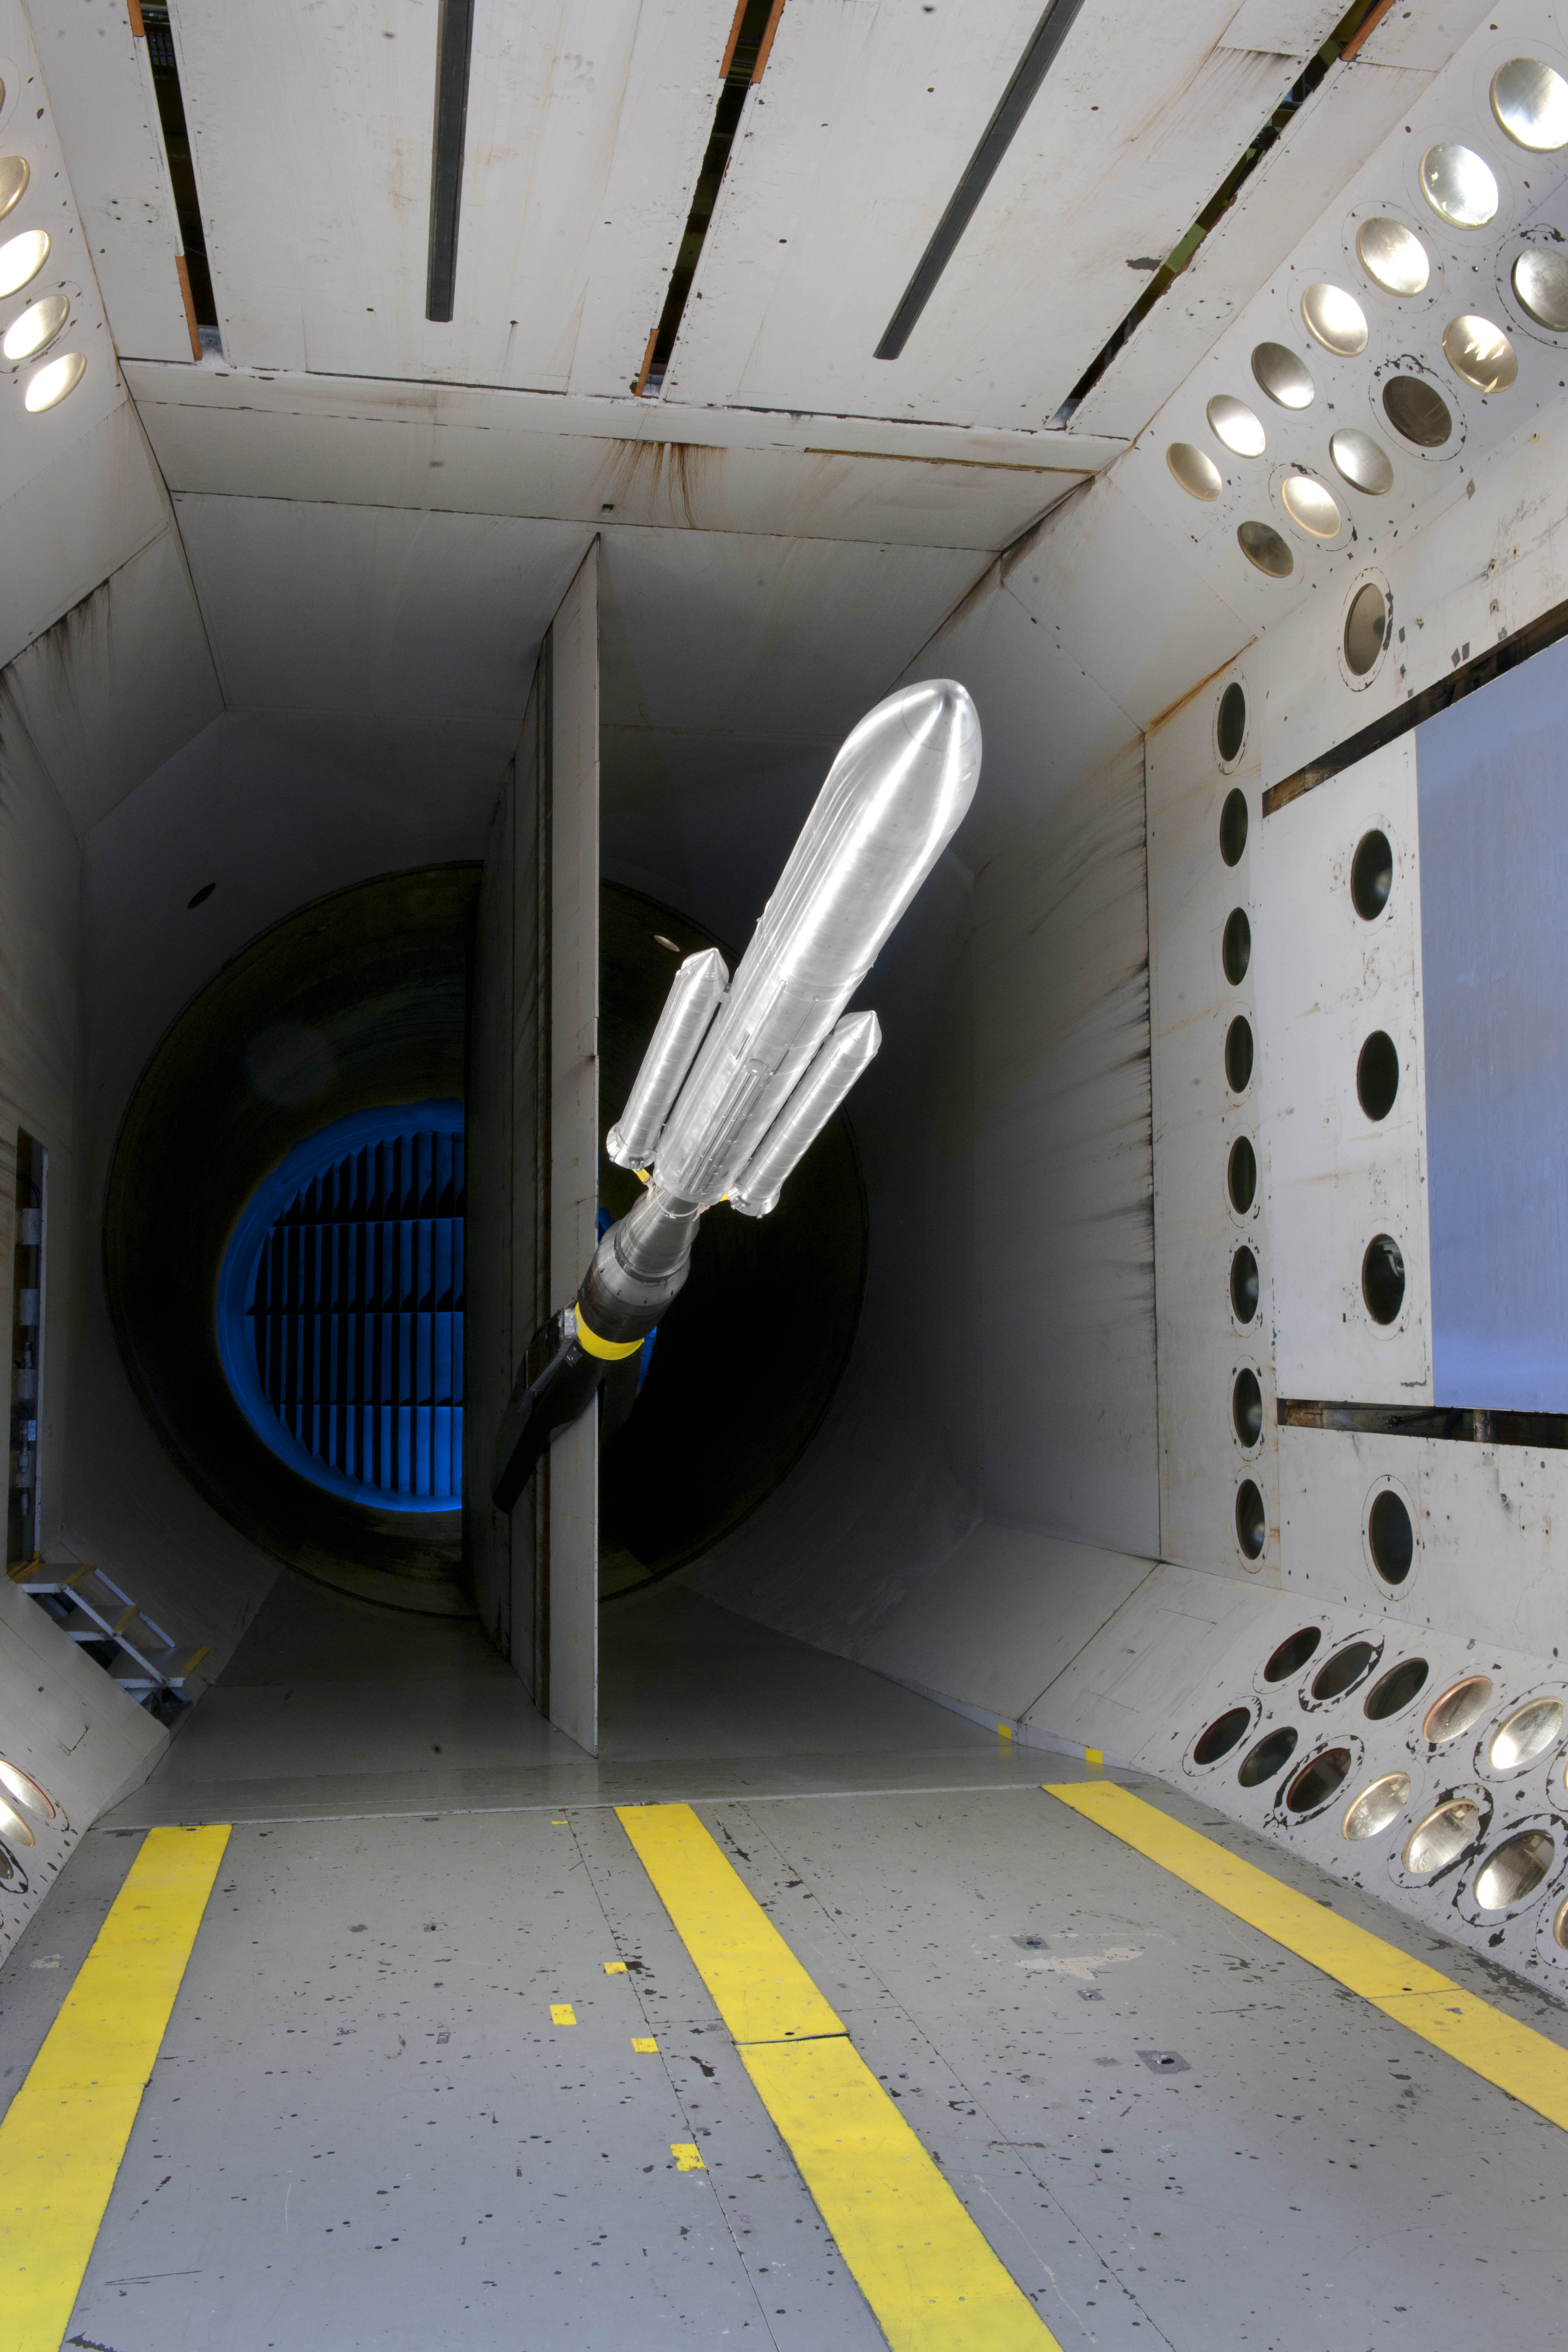 Model rocket in wind tunnel